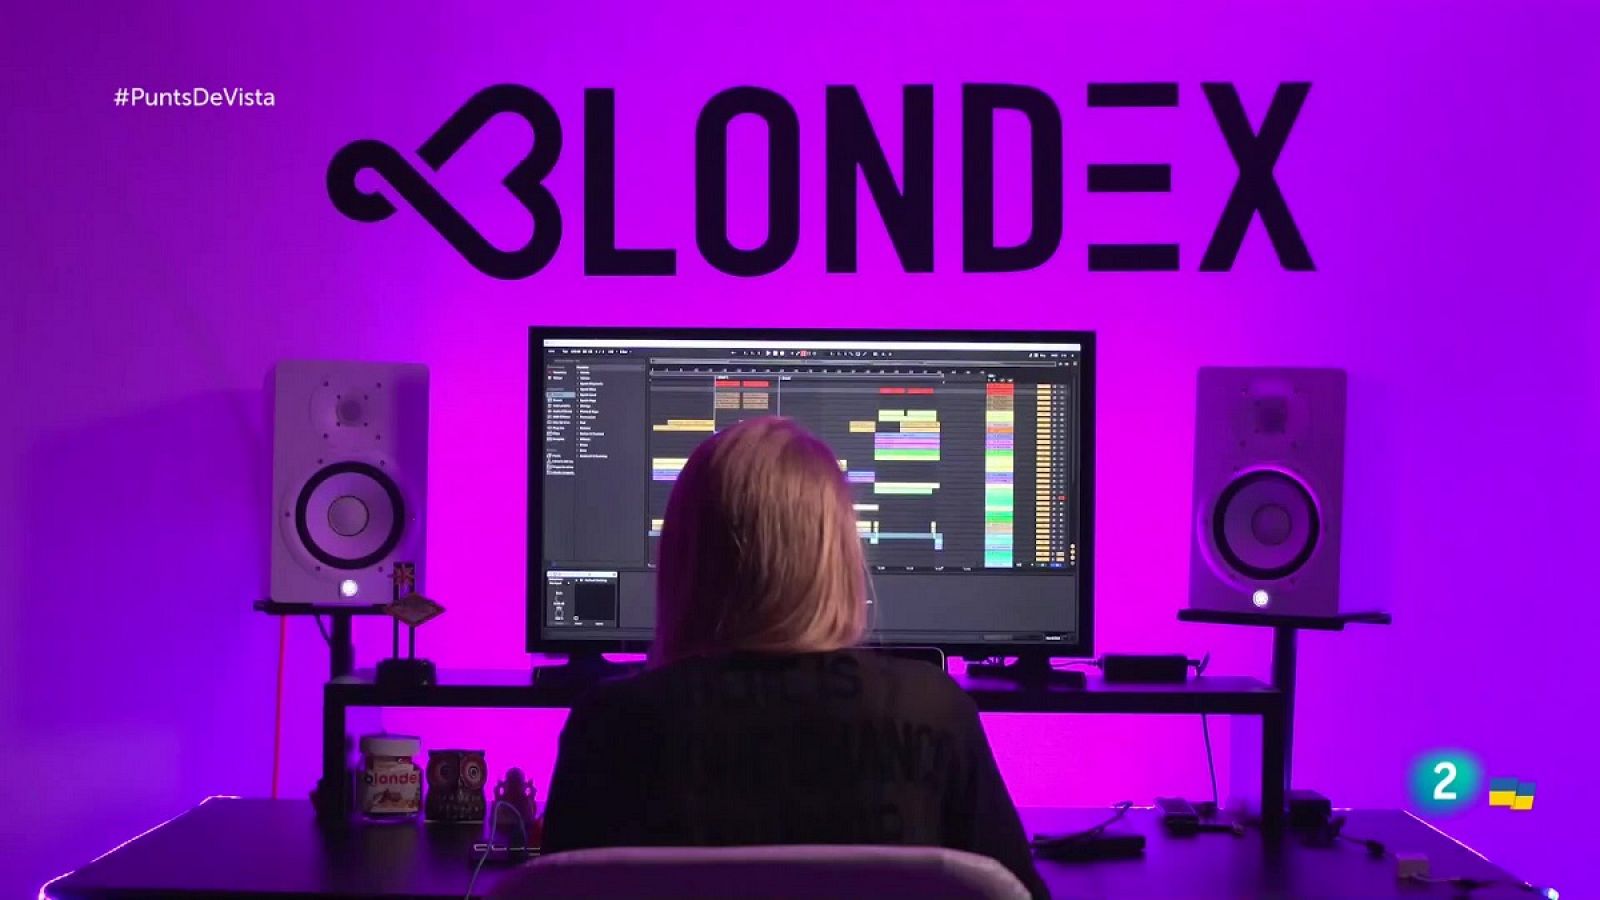 Blondex, la DJ catalana amb fans a l'Índia | Punts de vista